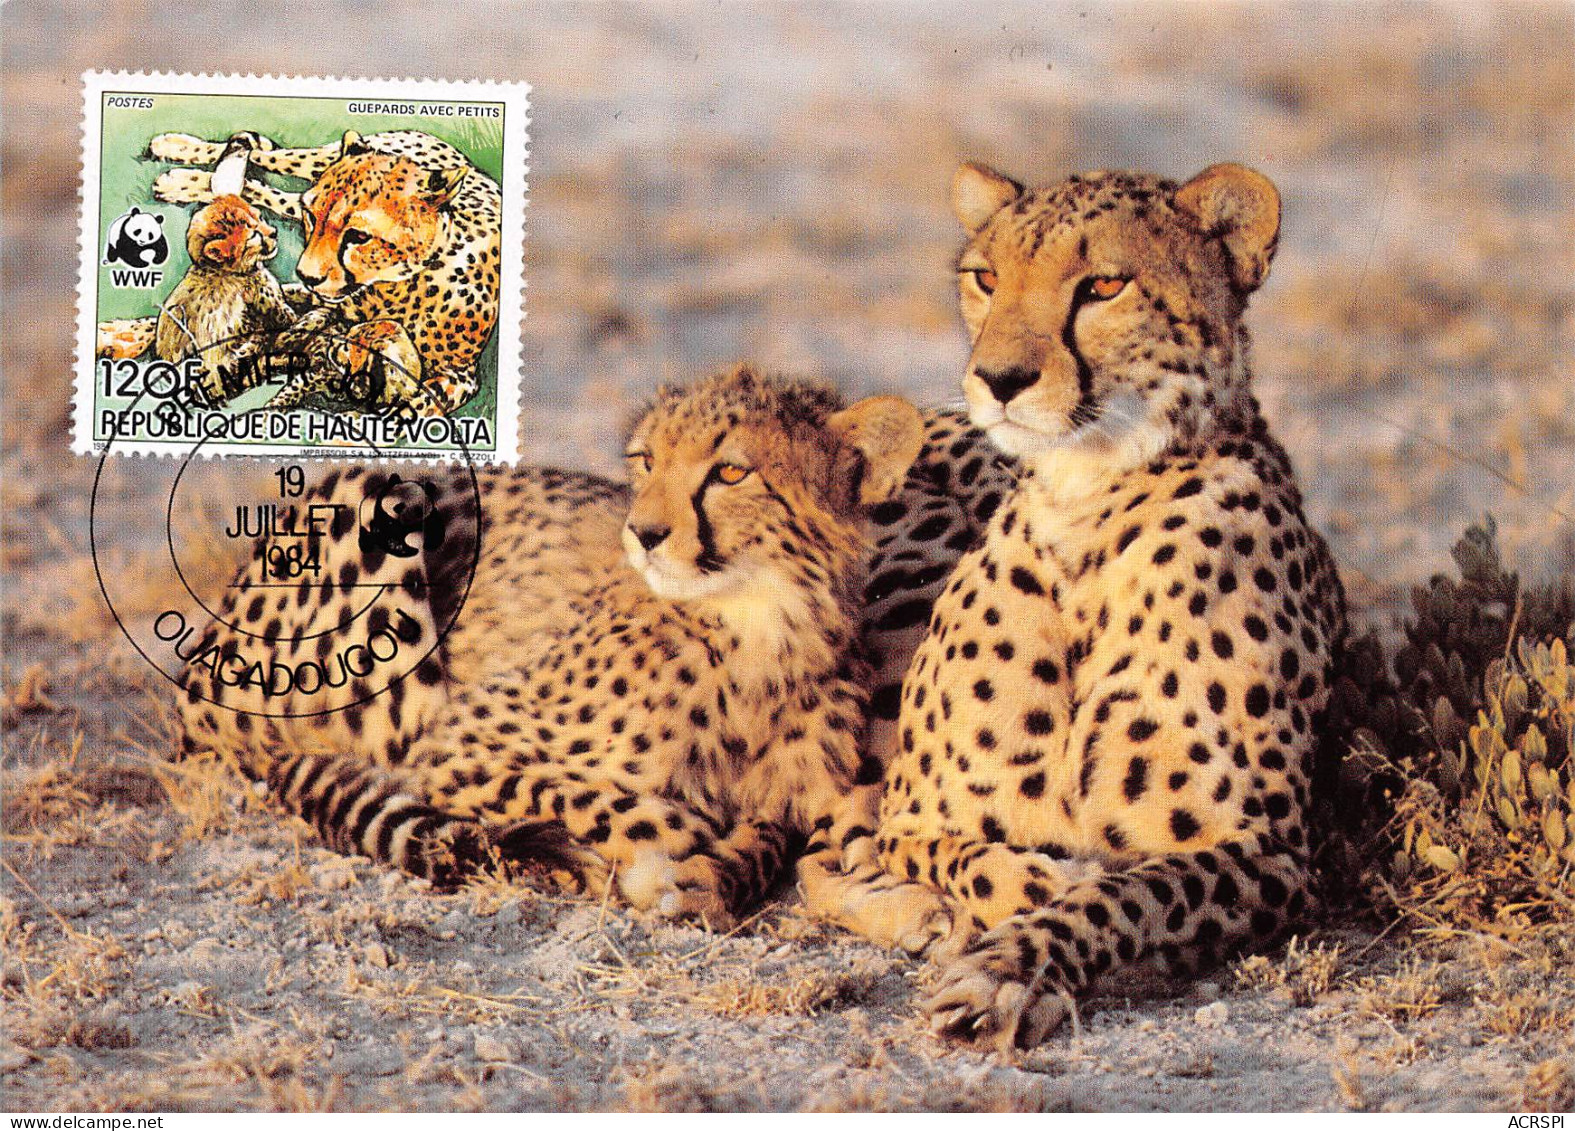 Burkina Faso Haute-Volta 1984 WWF Panthère Leopard Guépard Carte Premier Jour 120Francs (Scan R/V) N° 66 \MP7123 - Burkina Faso